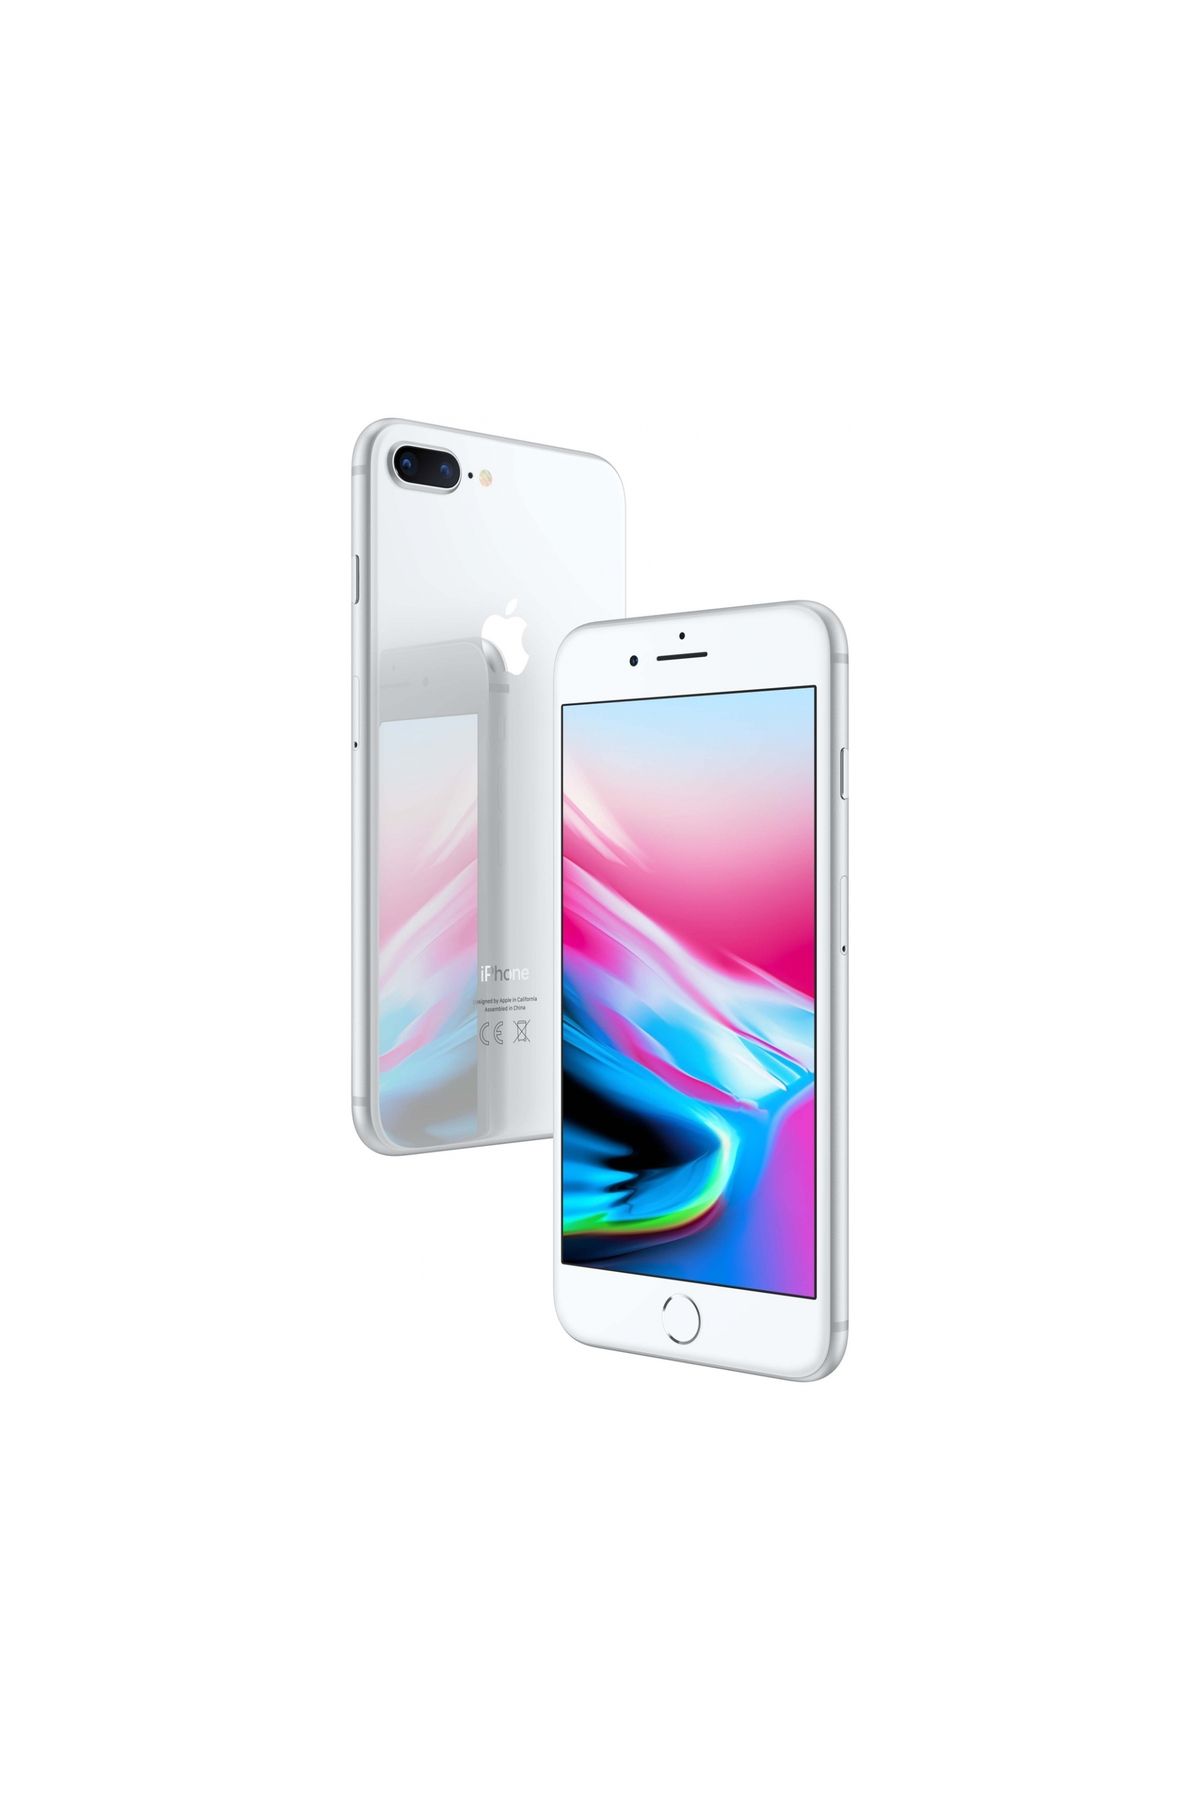 Apple Iphone 8 Plus 64gb Gümüş - Yenilenmis - Outlet